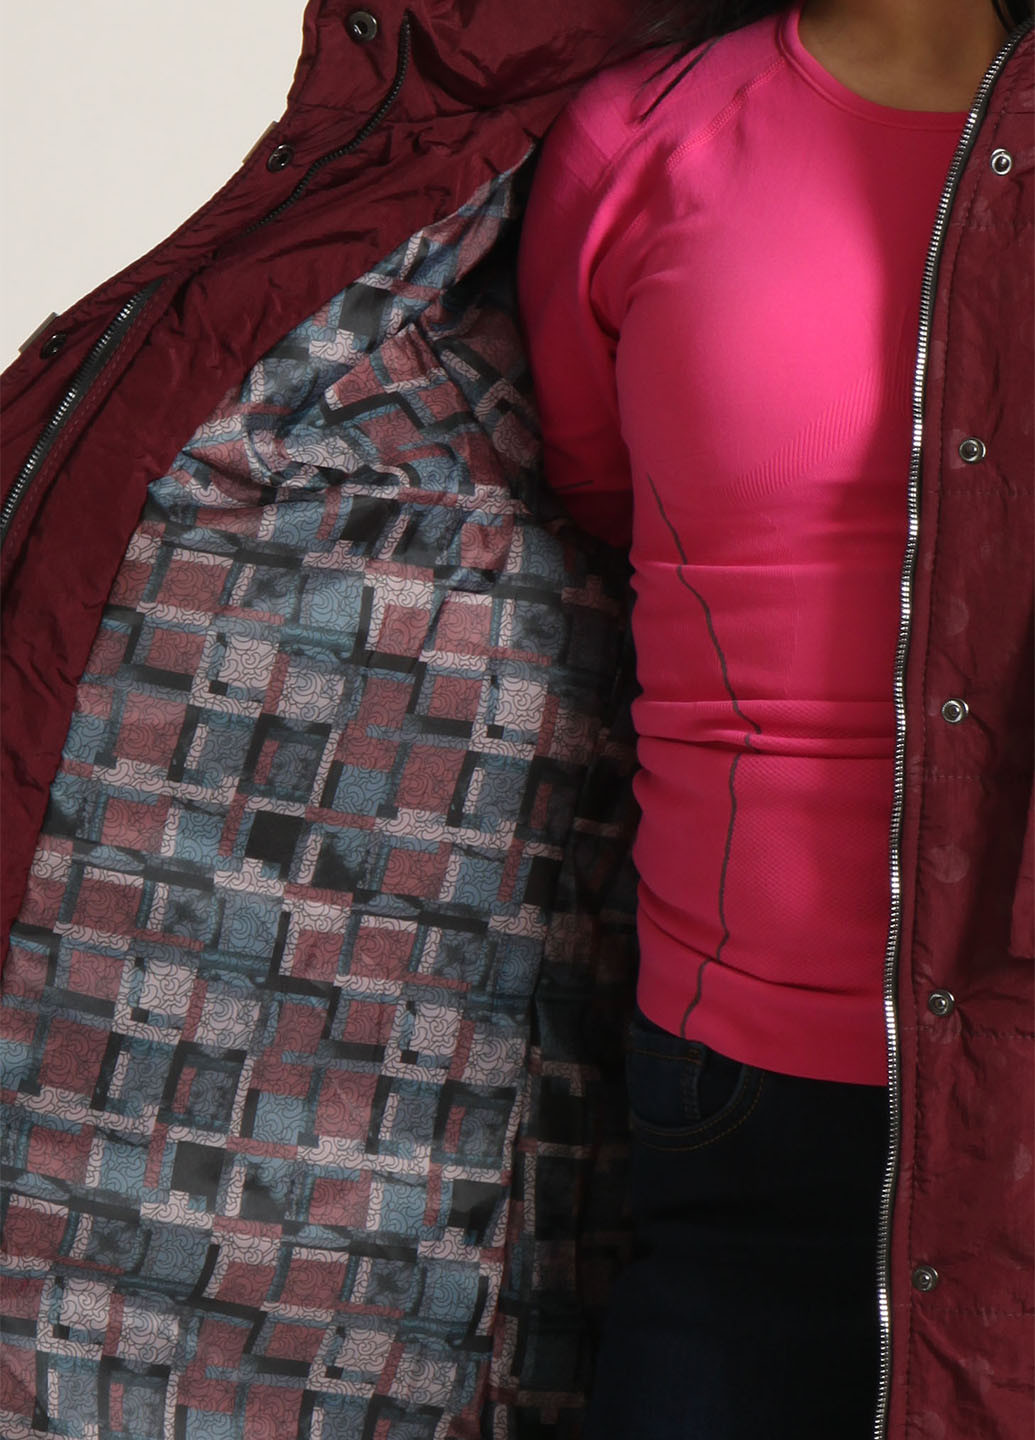 Бордовая зимняя куртка AnderMain